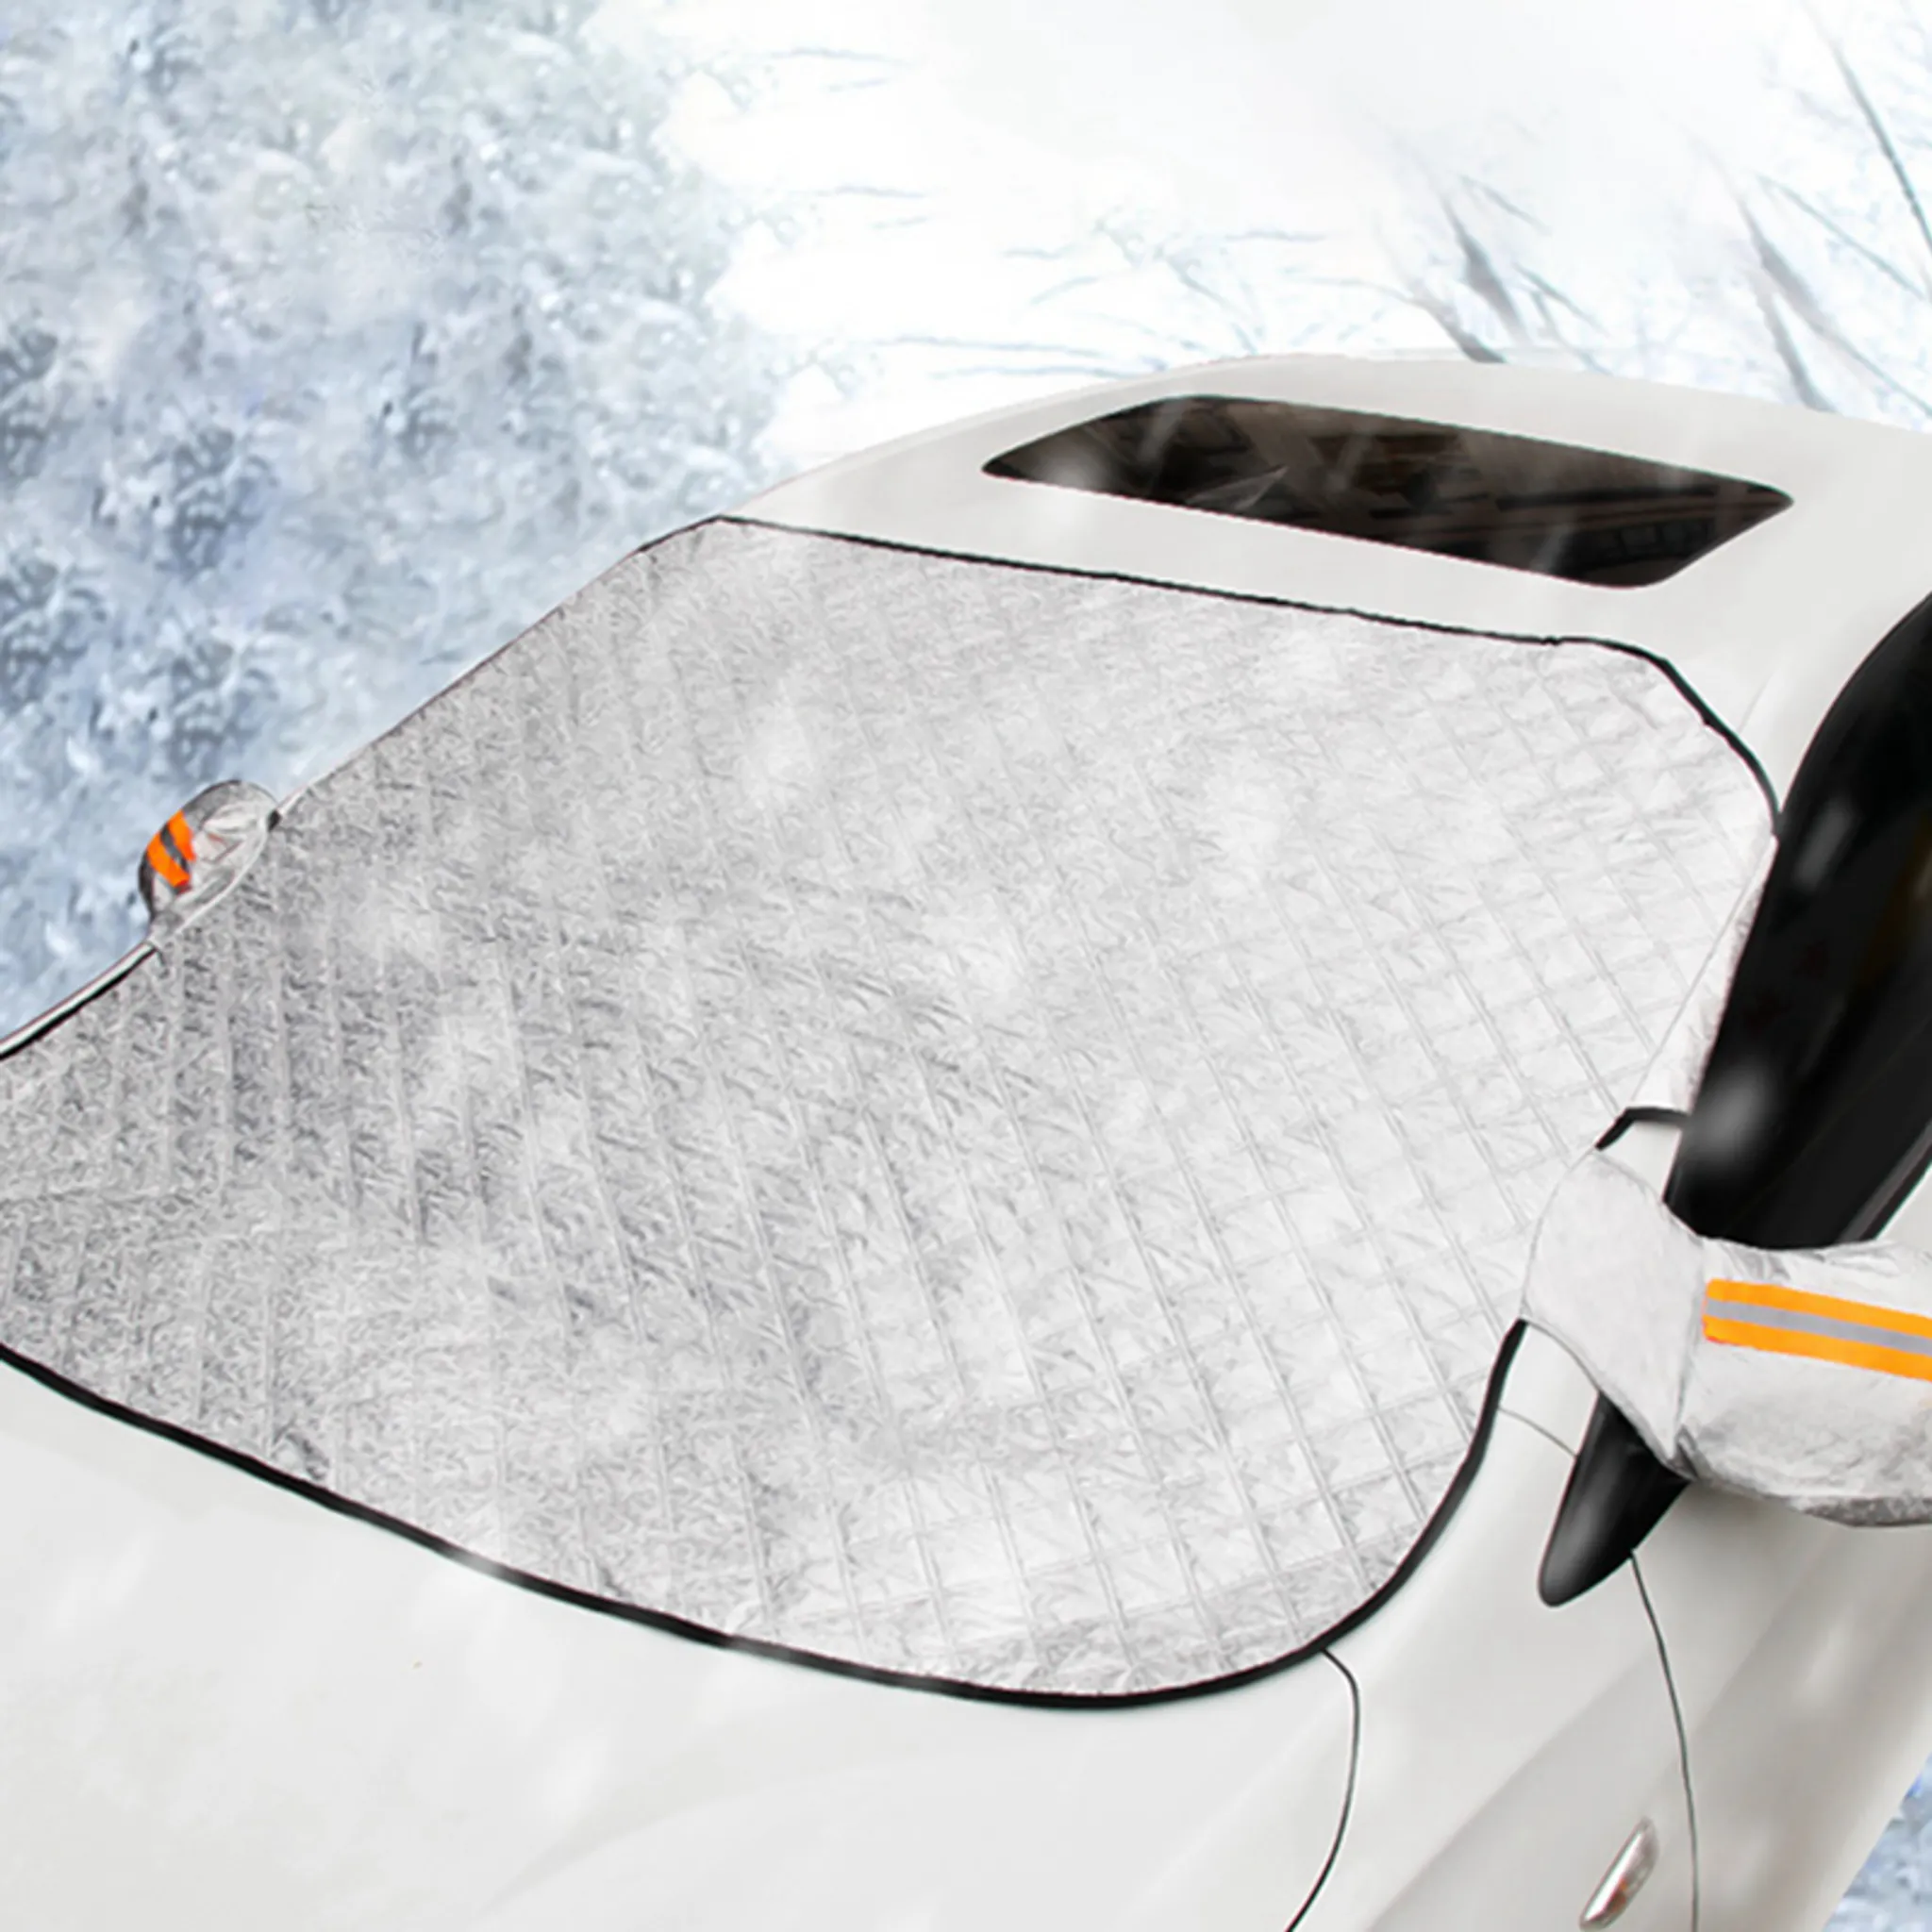 Kaufe DYS Magnetischer Auto-Autofenster-Windschutzscheiben-Schneeschutz-EIS-Frost-Hauben-Sonnenschutz-Schutz